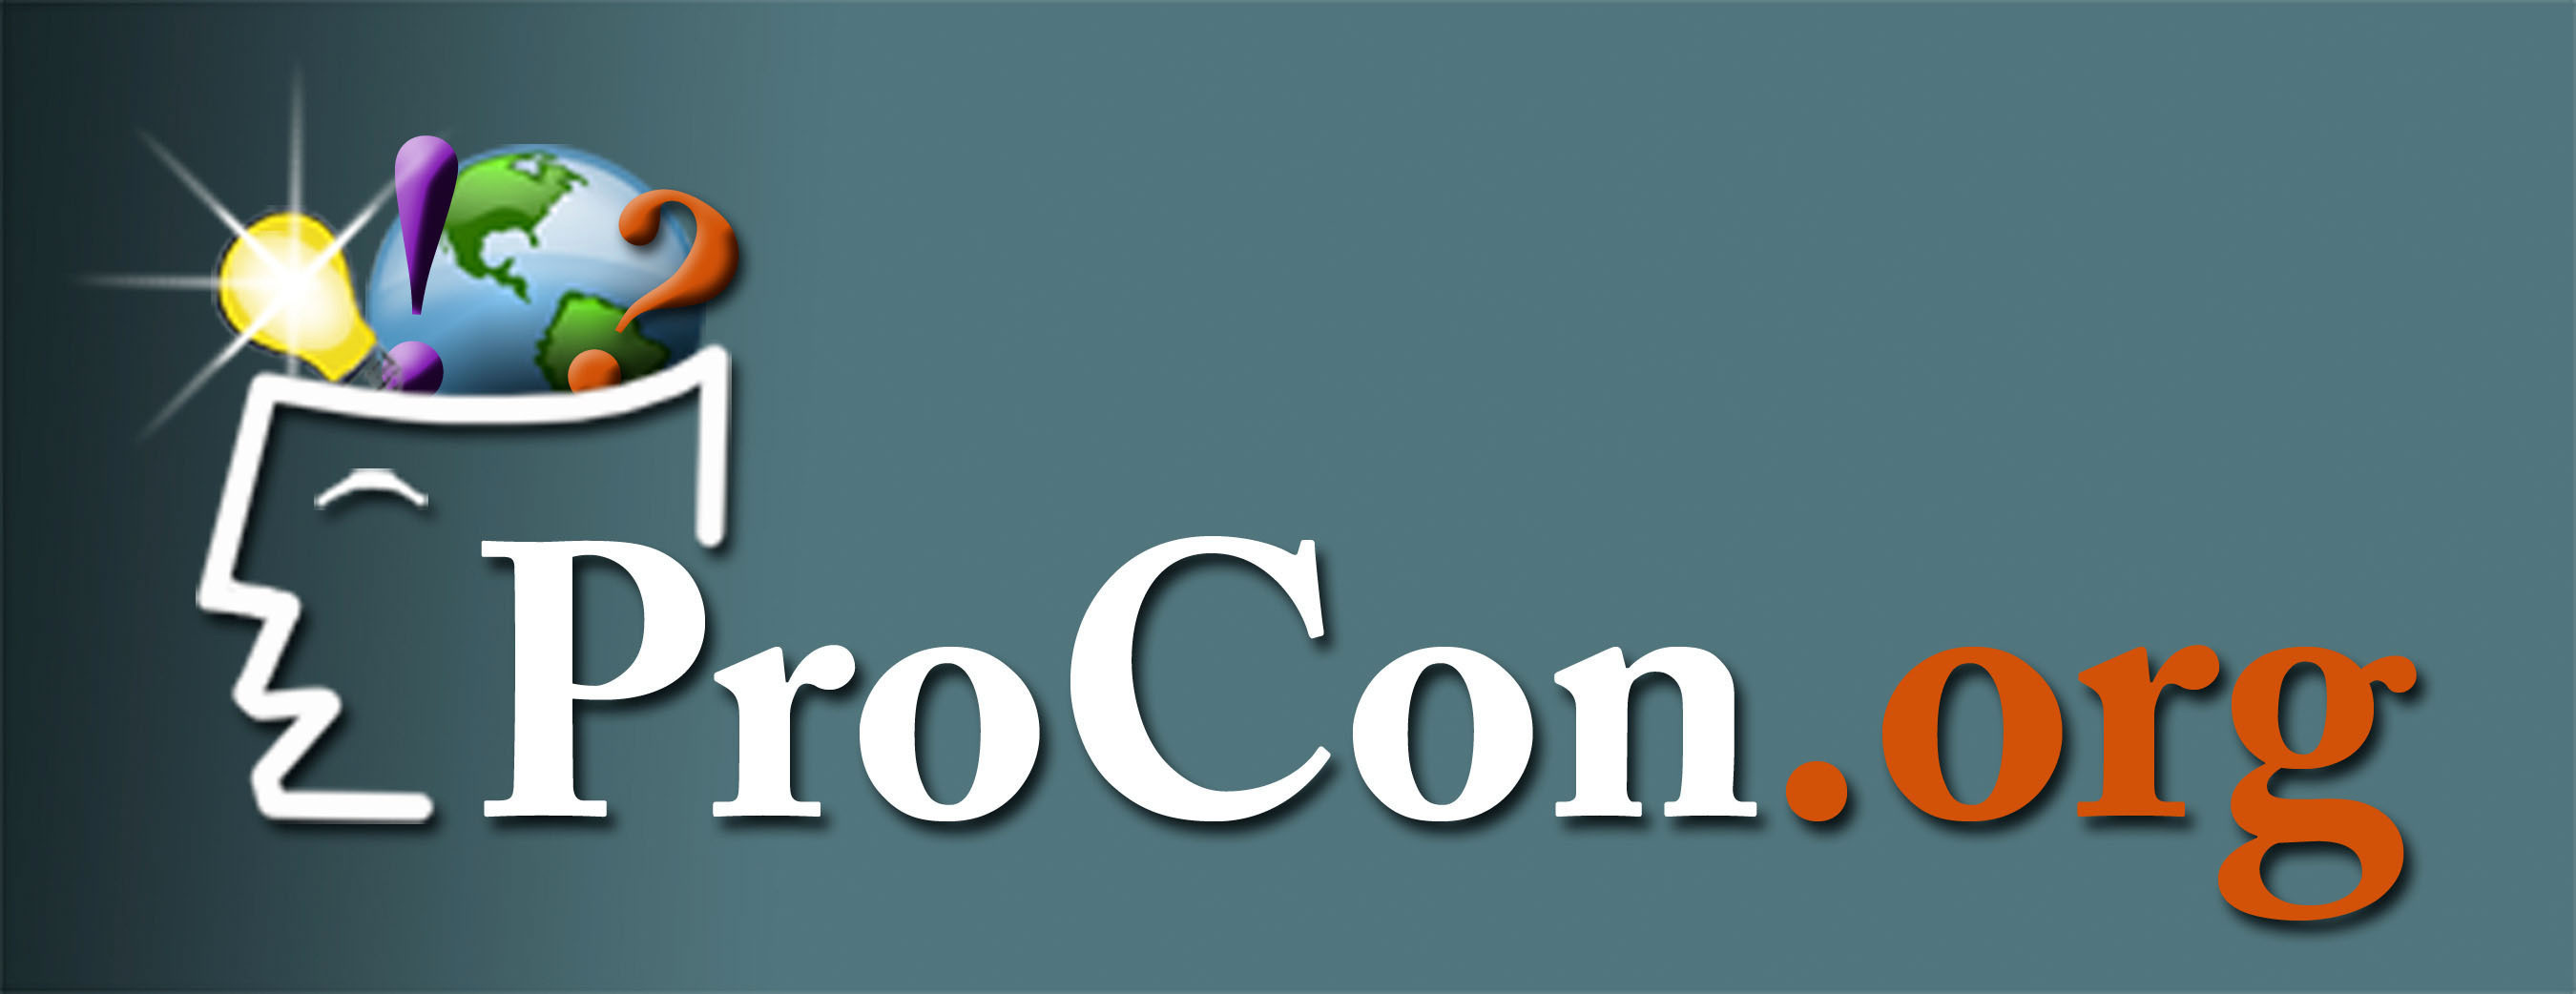 ProCon.org logo.